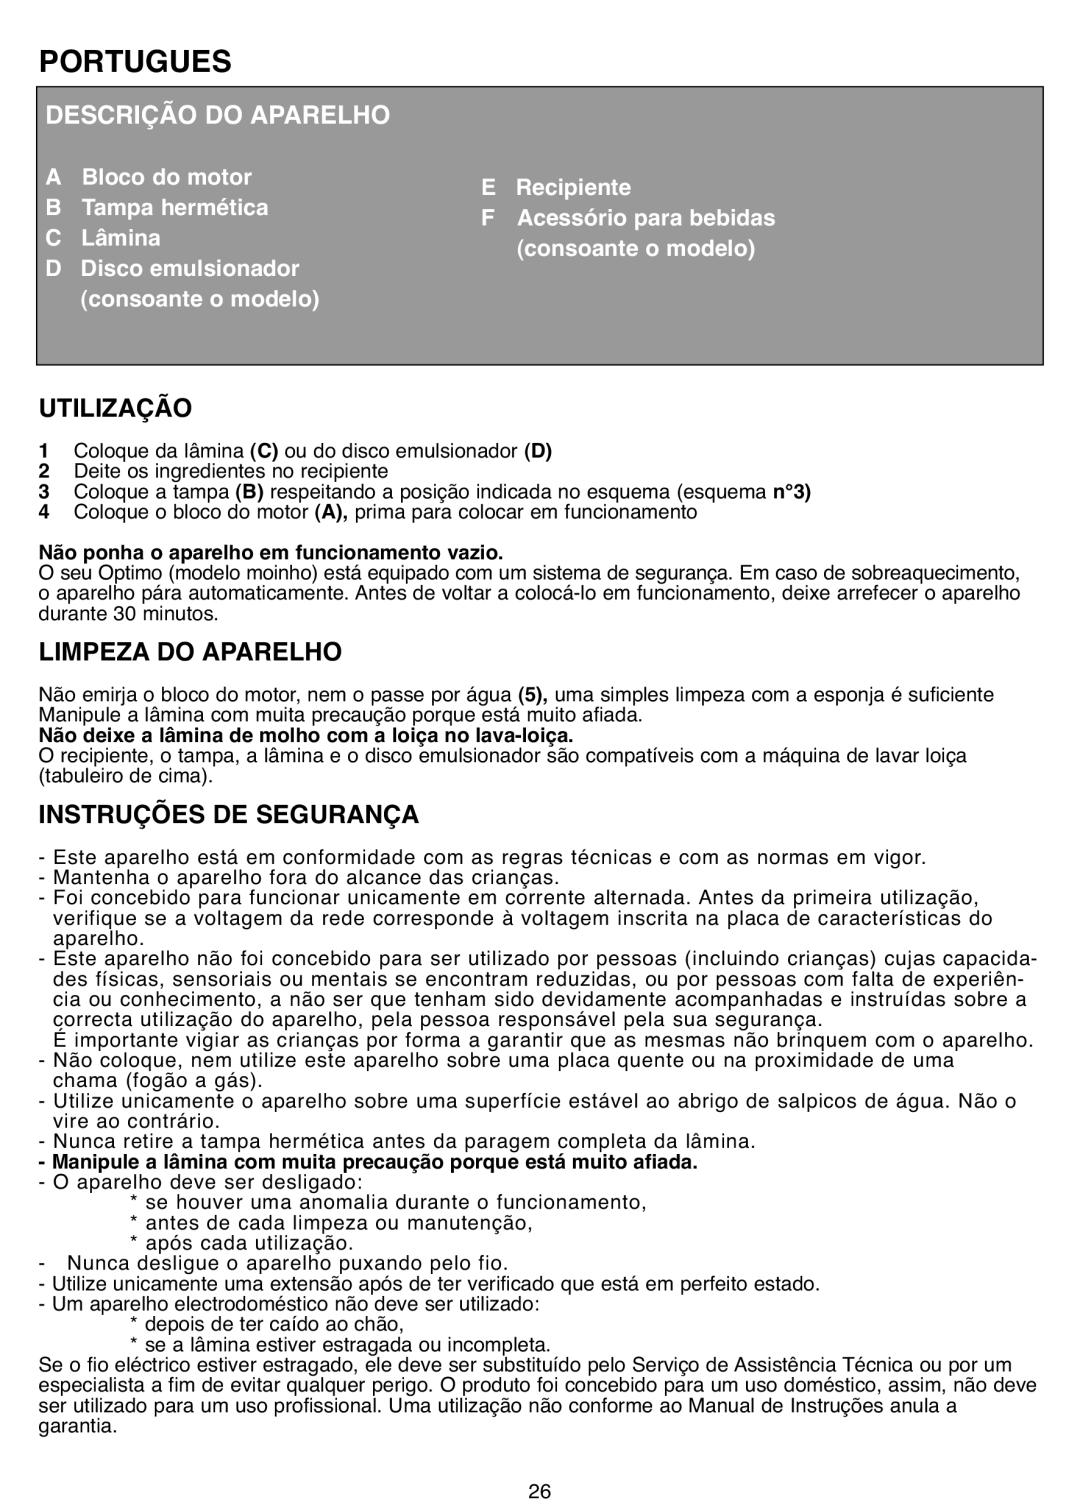 Tefal MB403444, MB403480 manual Portugues, Descrição Do Aparelho, Utilização, Limpeza Do Aparelho, Instruções De Segurança 